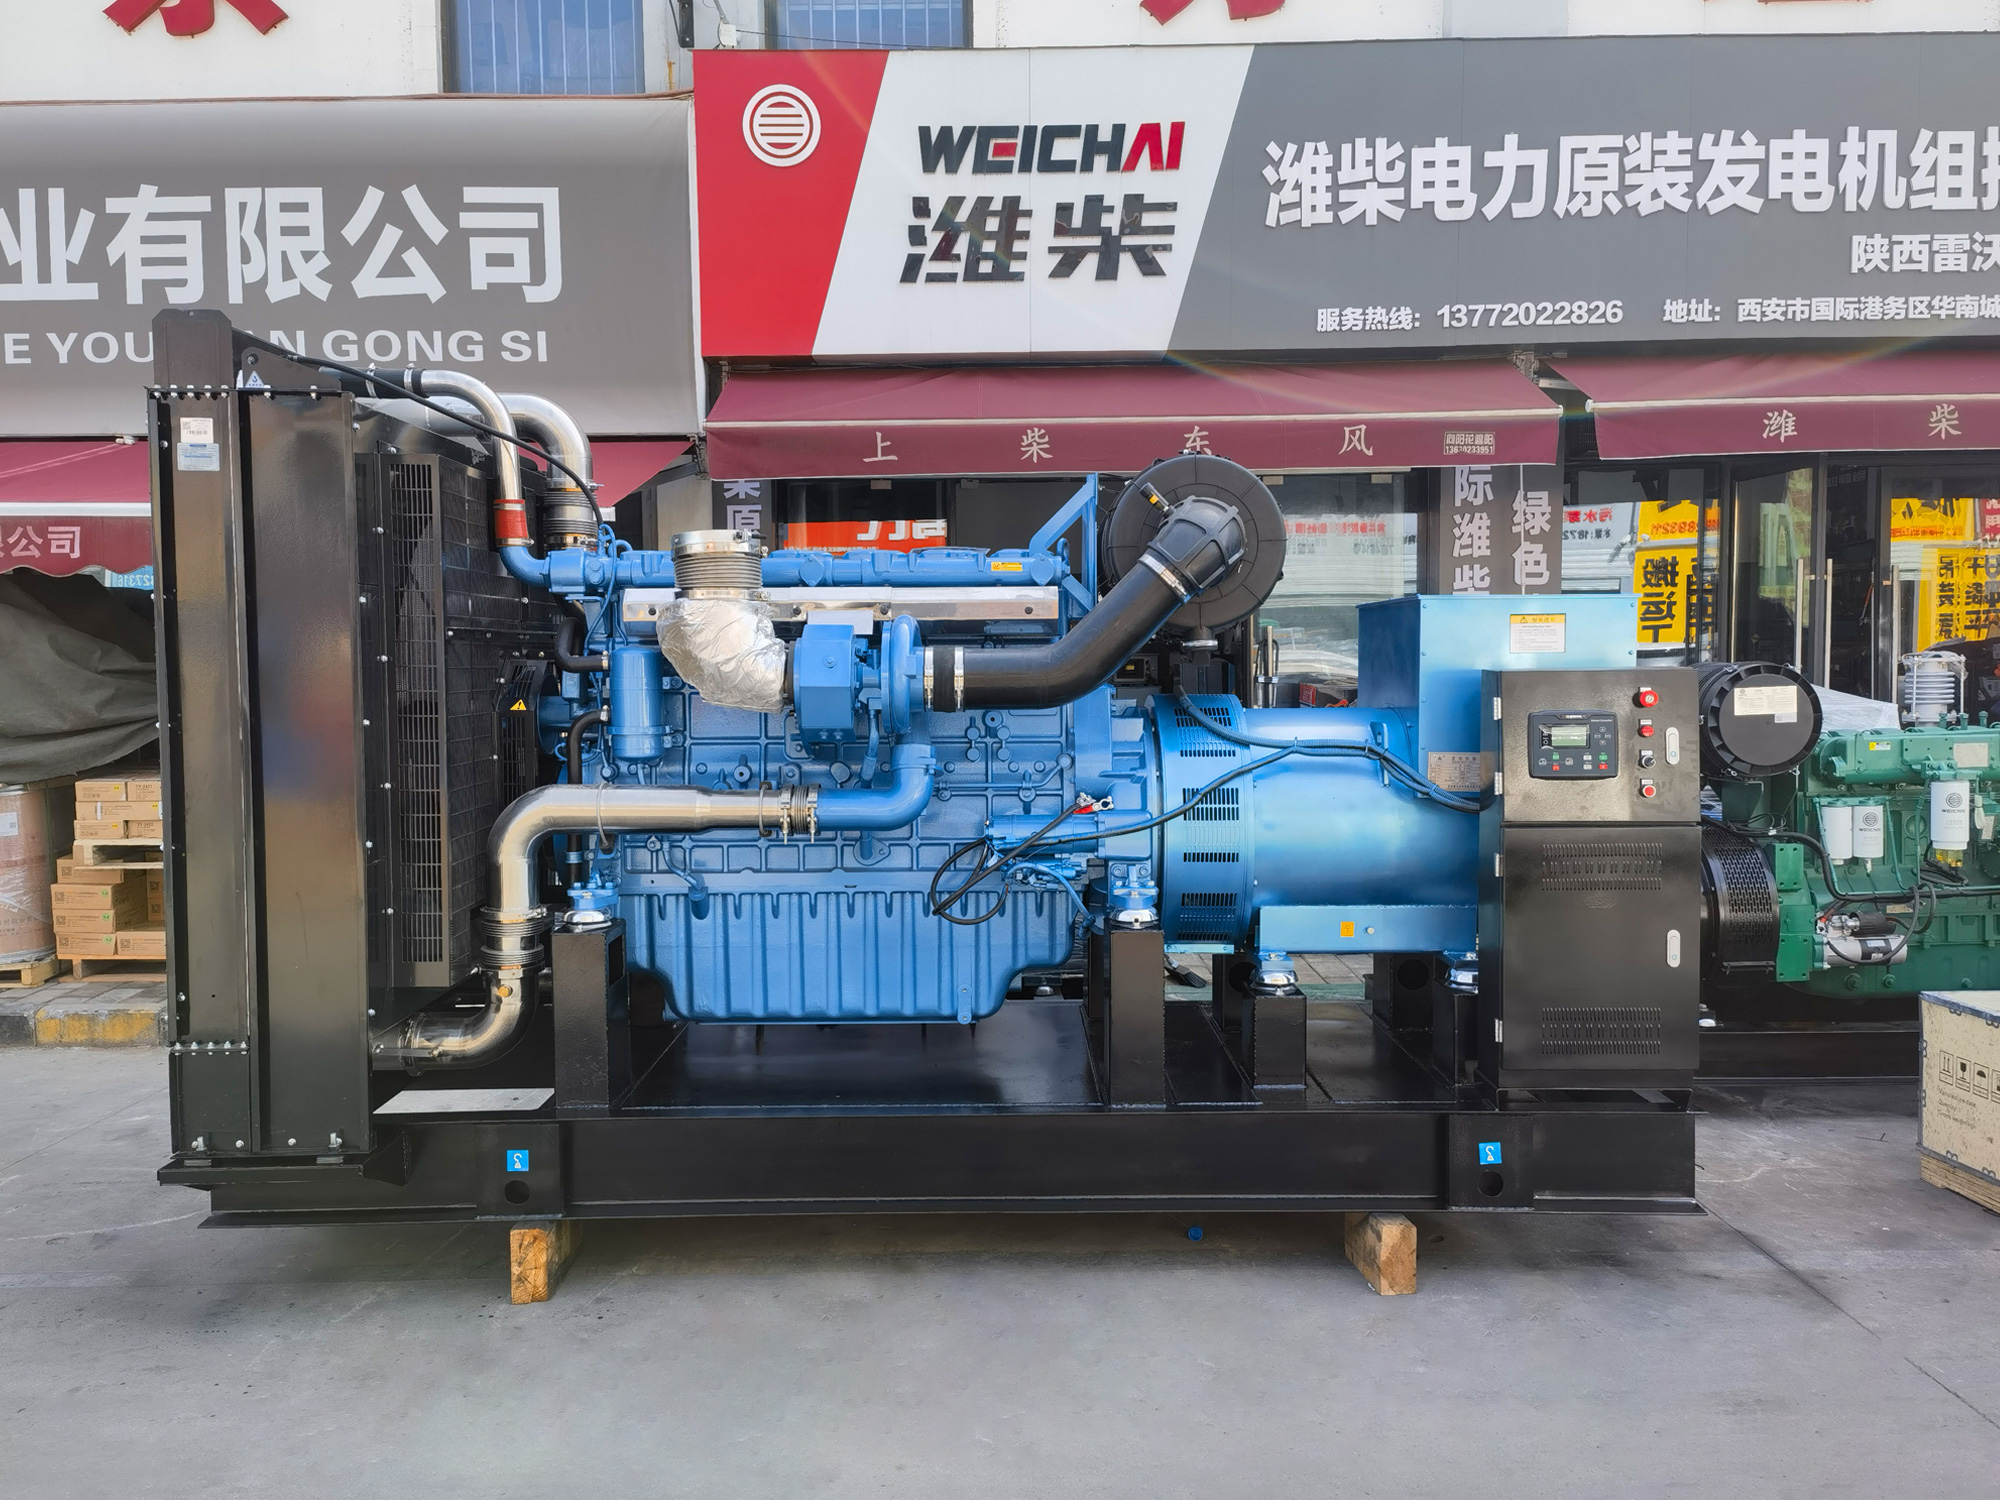 西安发电机厂家:西安柴油发电机组的功率和排放是否存在矛盾？